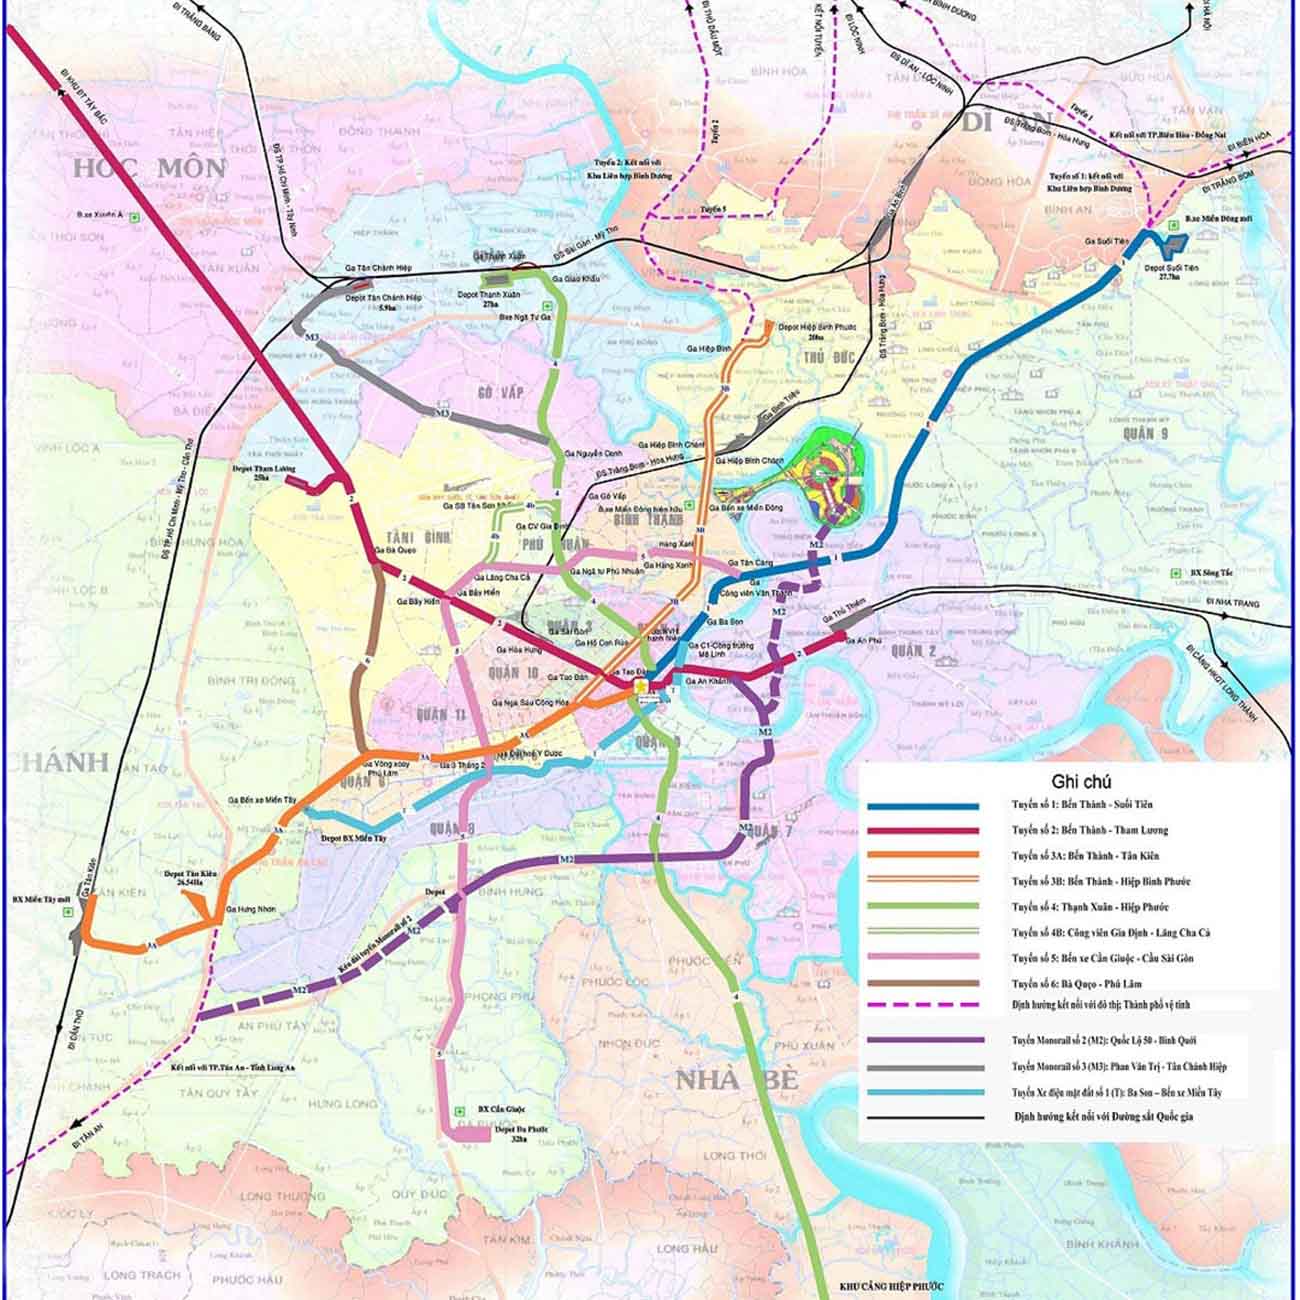 Bản đồ metro Sài Gòn: Khám phá hệ thống giao thông công cộng hiện đại của TP.HCM với bản đồ metro mới nhất. Dễ dàng di chuyển và khám phá thành phố ngay cả vào giờ cao điểm chỉ với một chuyến đi trên hệ thống tàu điện ngầm Sài Gòn.